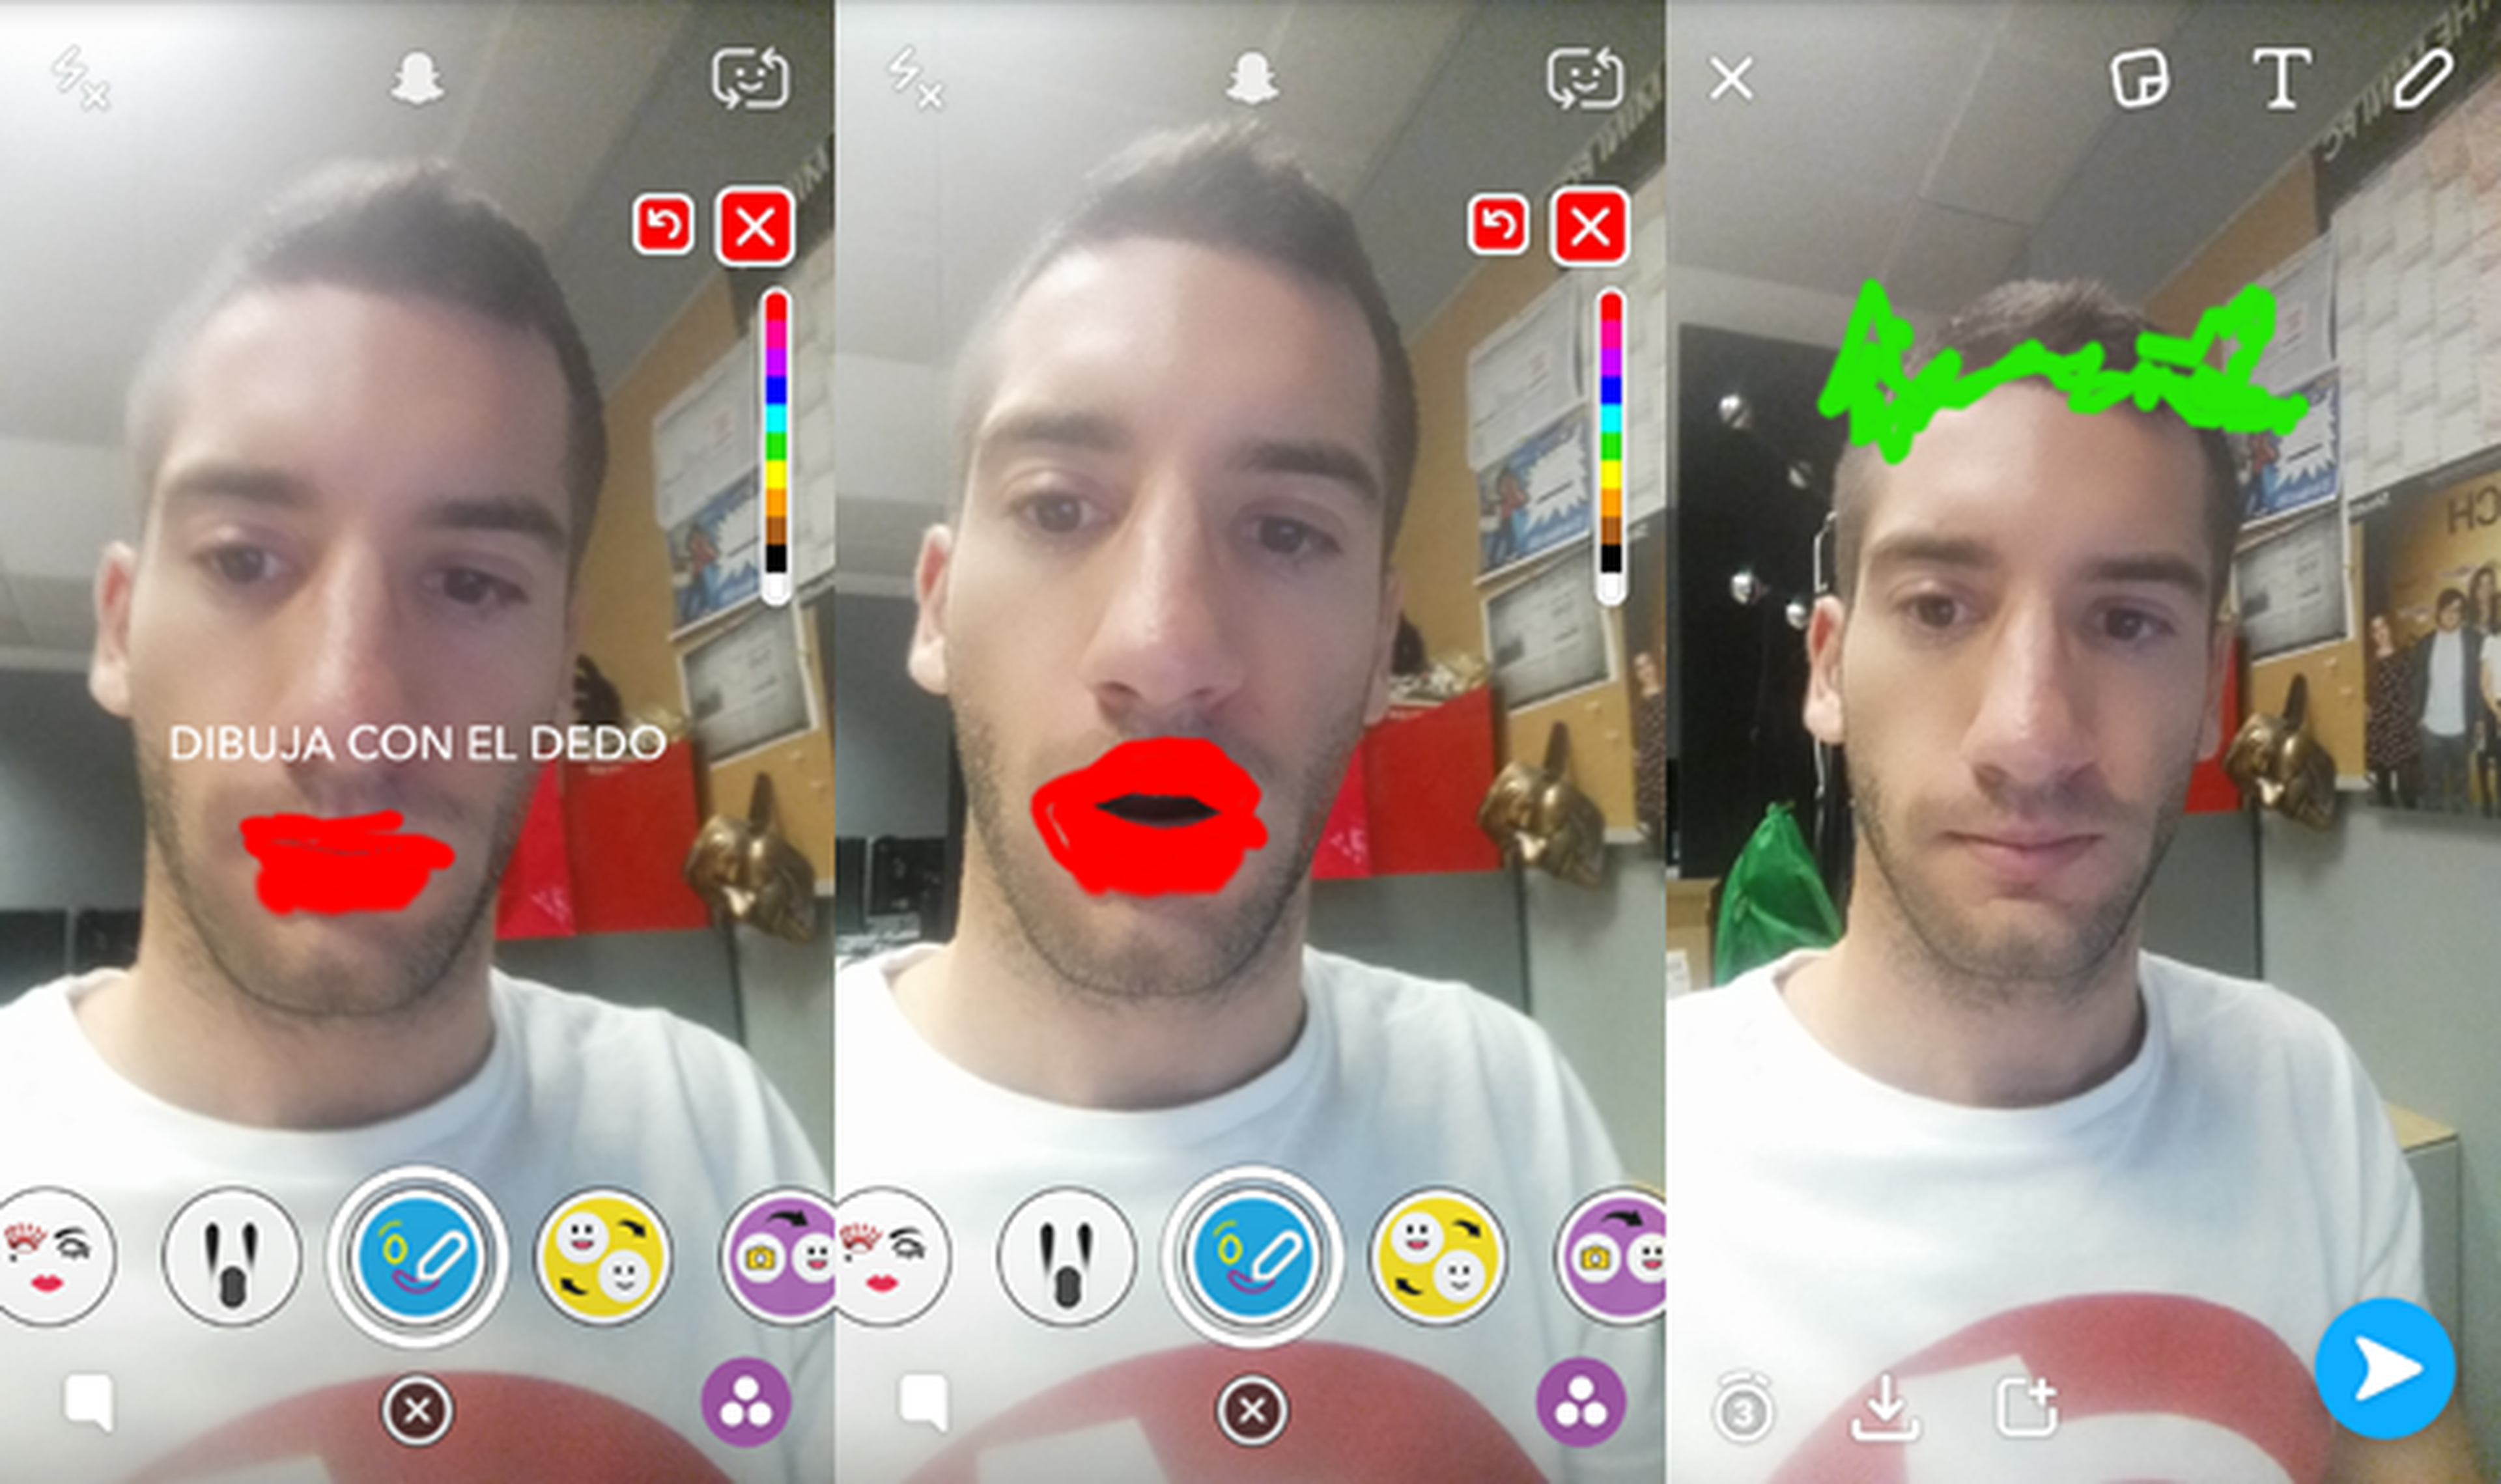 Cómo funciona Snapchat: trucos y opciones ocultas